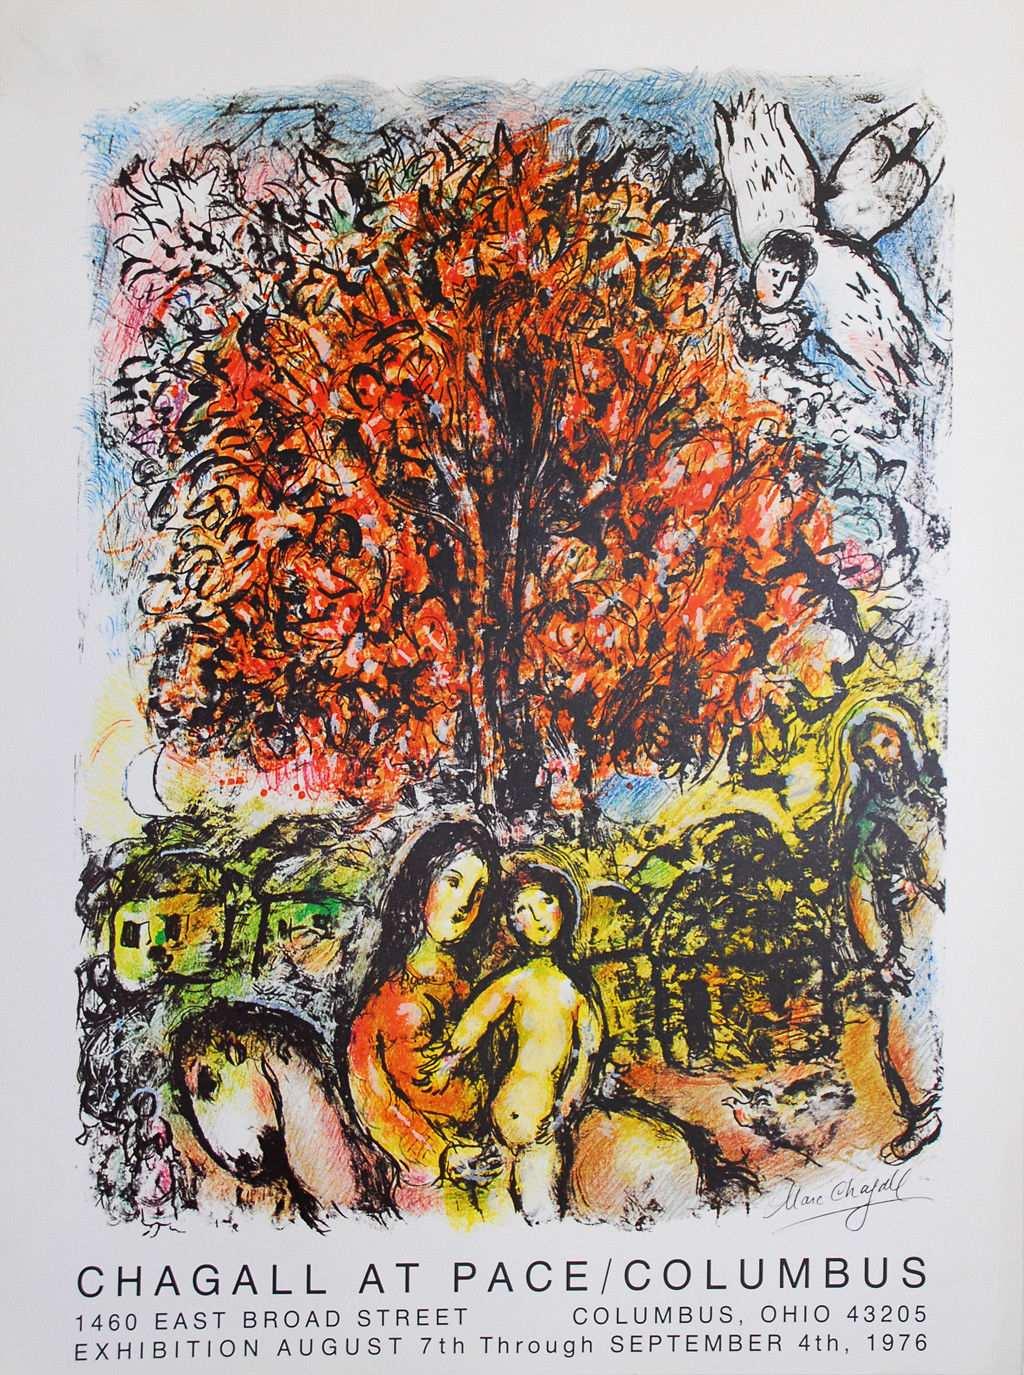 14 von 19 13 10341 Marc Chagall 1976 82 x 62 x 1 / 82 x 62 x 1 39,00 250,00 CHAGALL - Saint Famille - Pace Columbus -